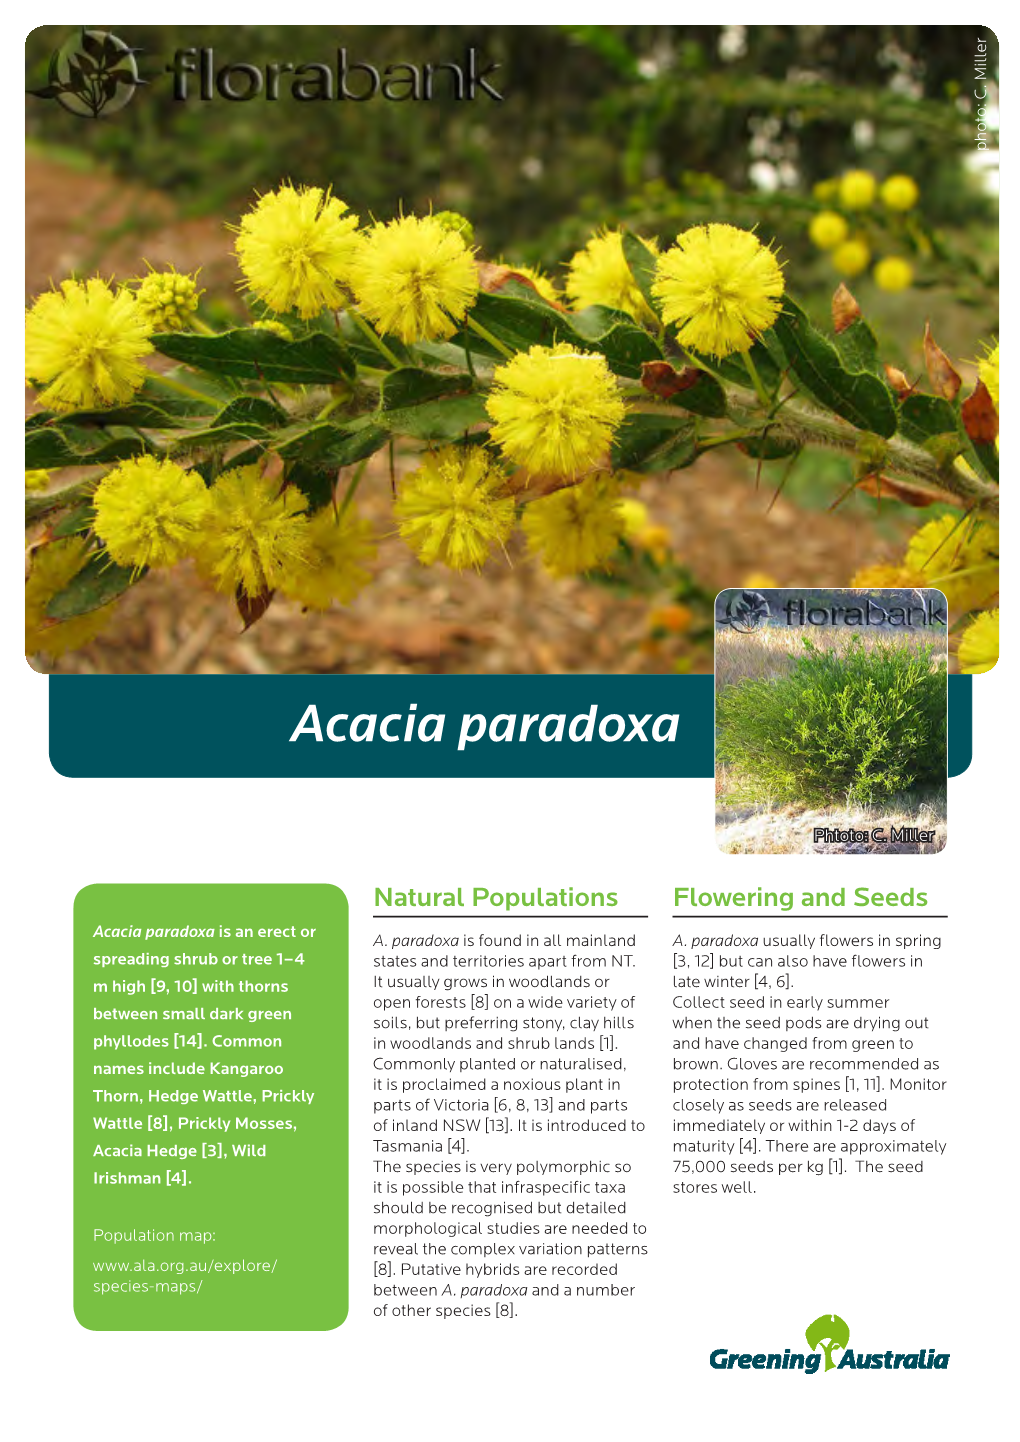 Acacia Paradoxa